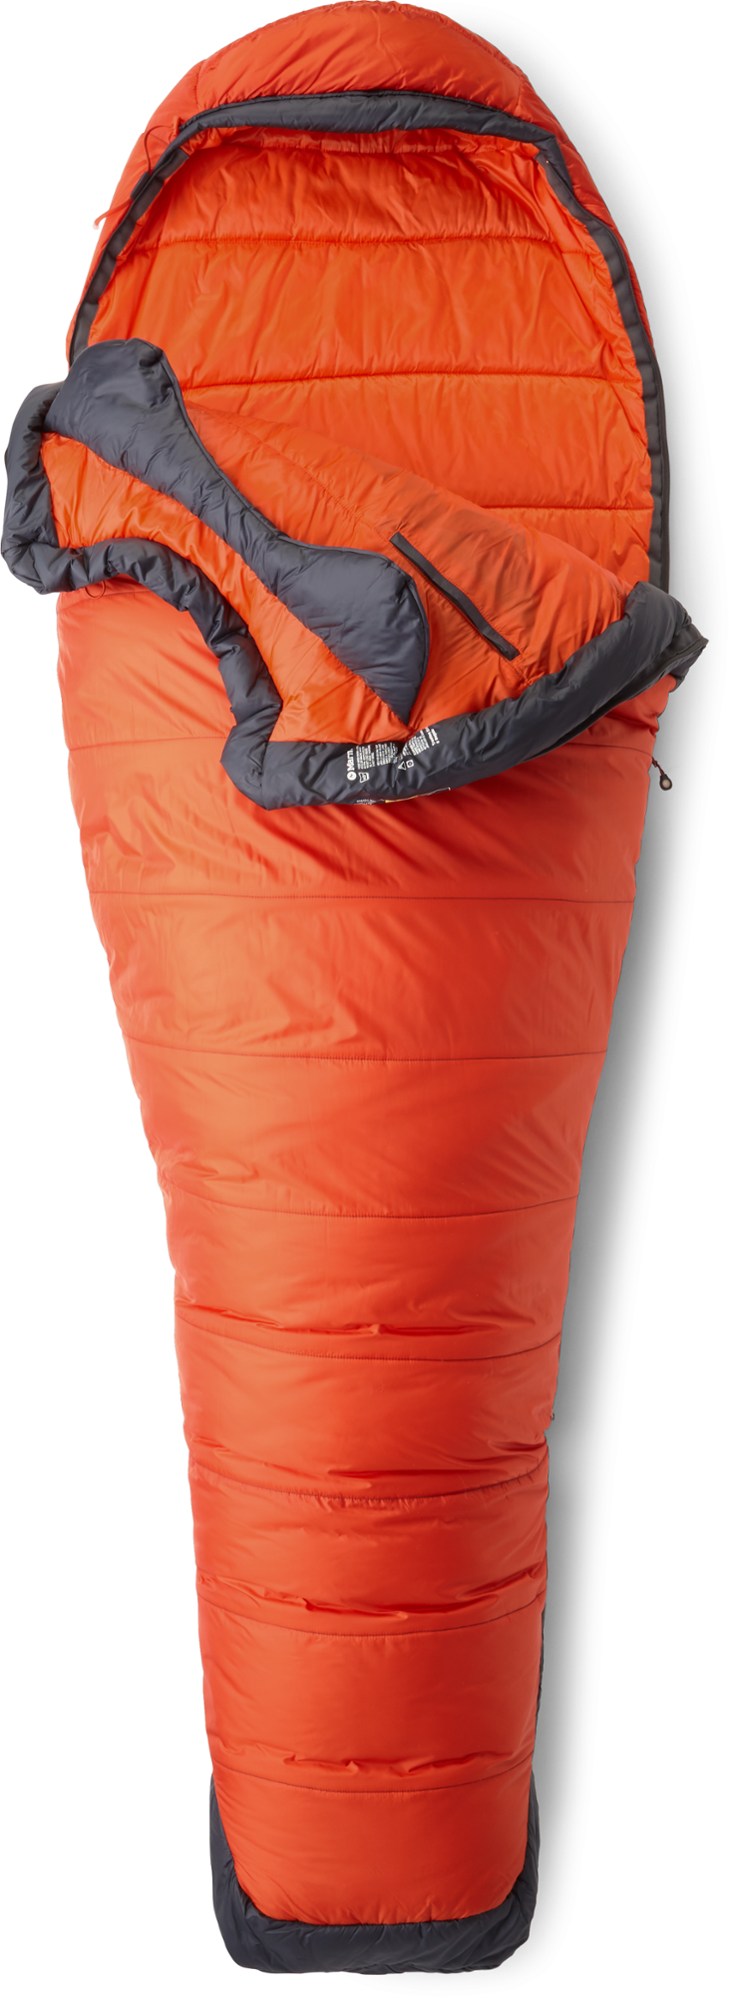 Спальный мешок Trestles Elite Eco 0 Marmot, оранжевый